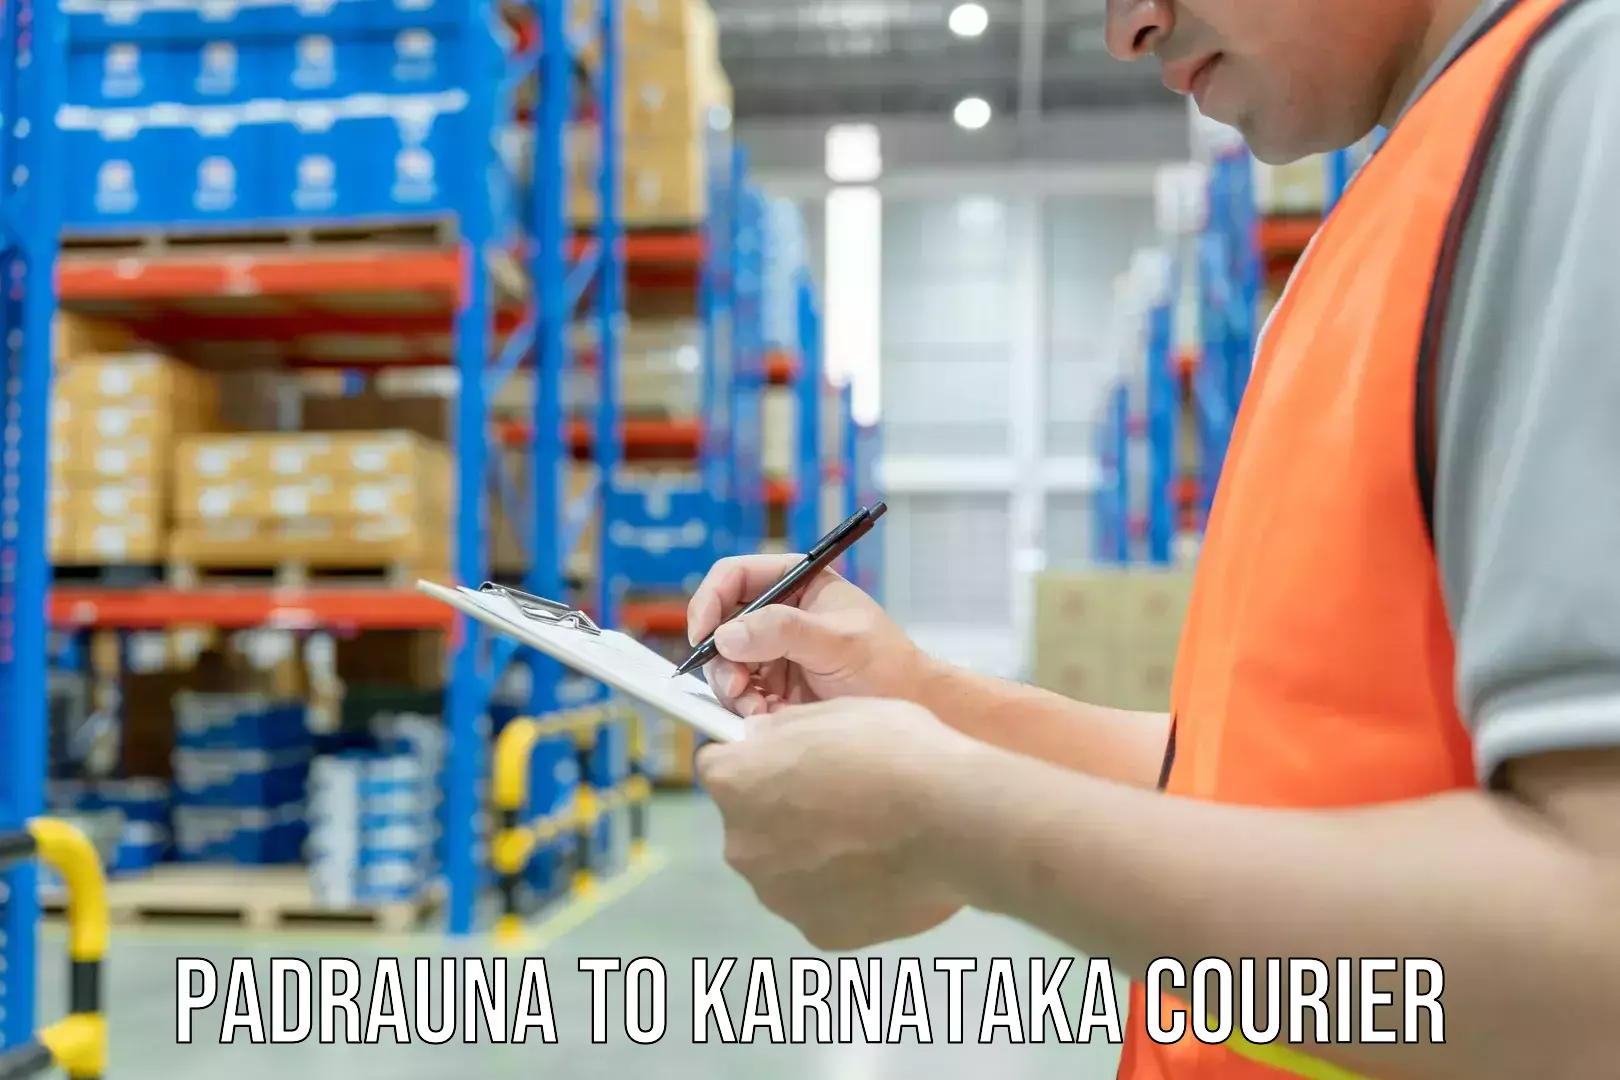 Reliable moving solutions Padrauna to Karnataka